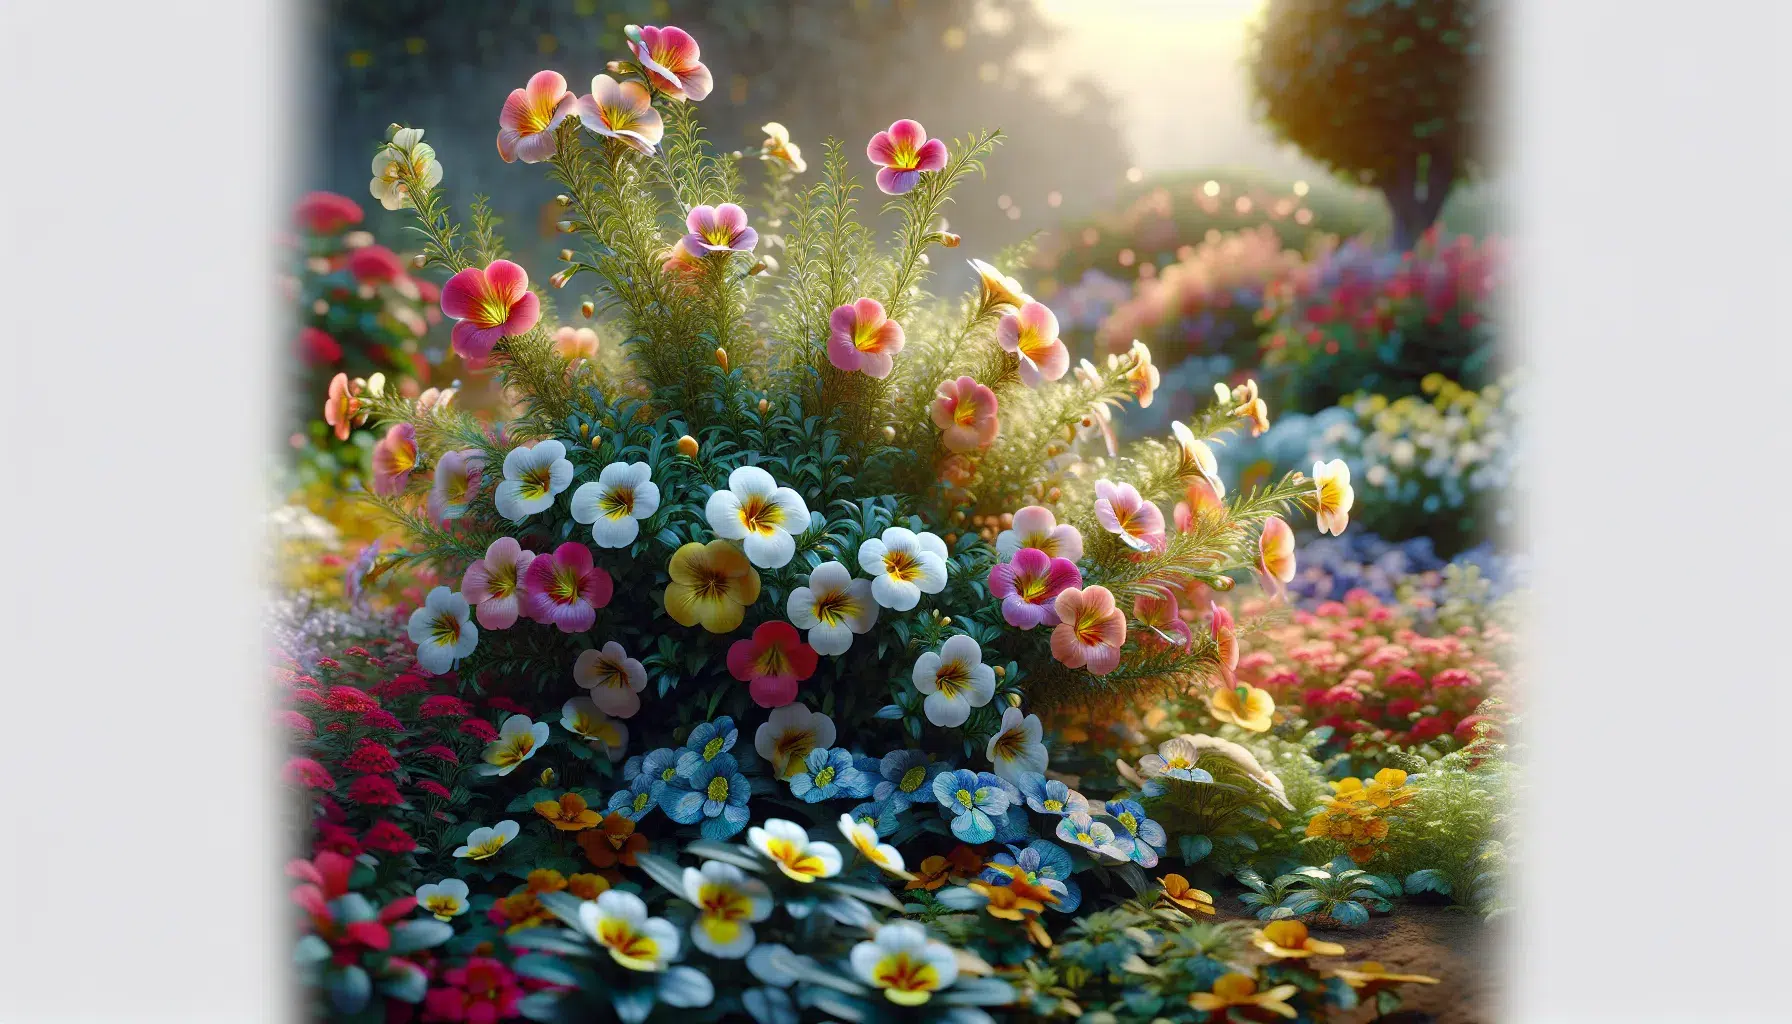 Imagen de una exuberante planta de nemesia, con delicadas flores de colores brillantes, iluminando un jardín.